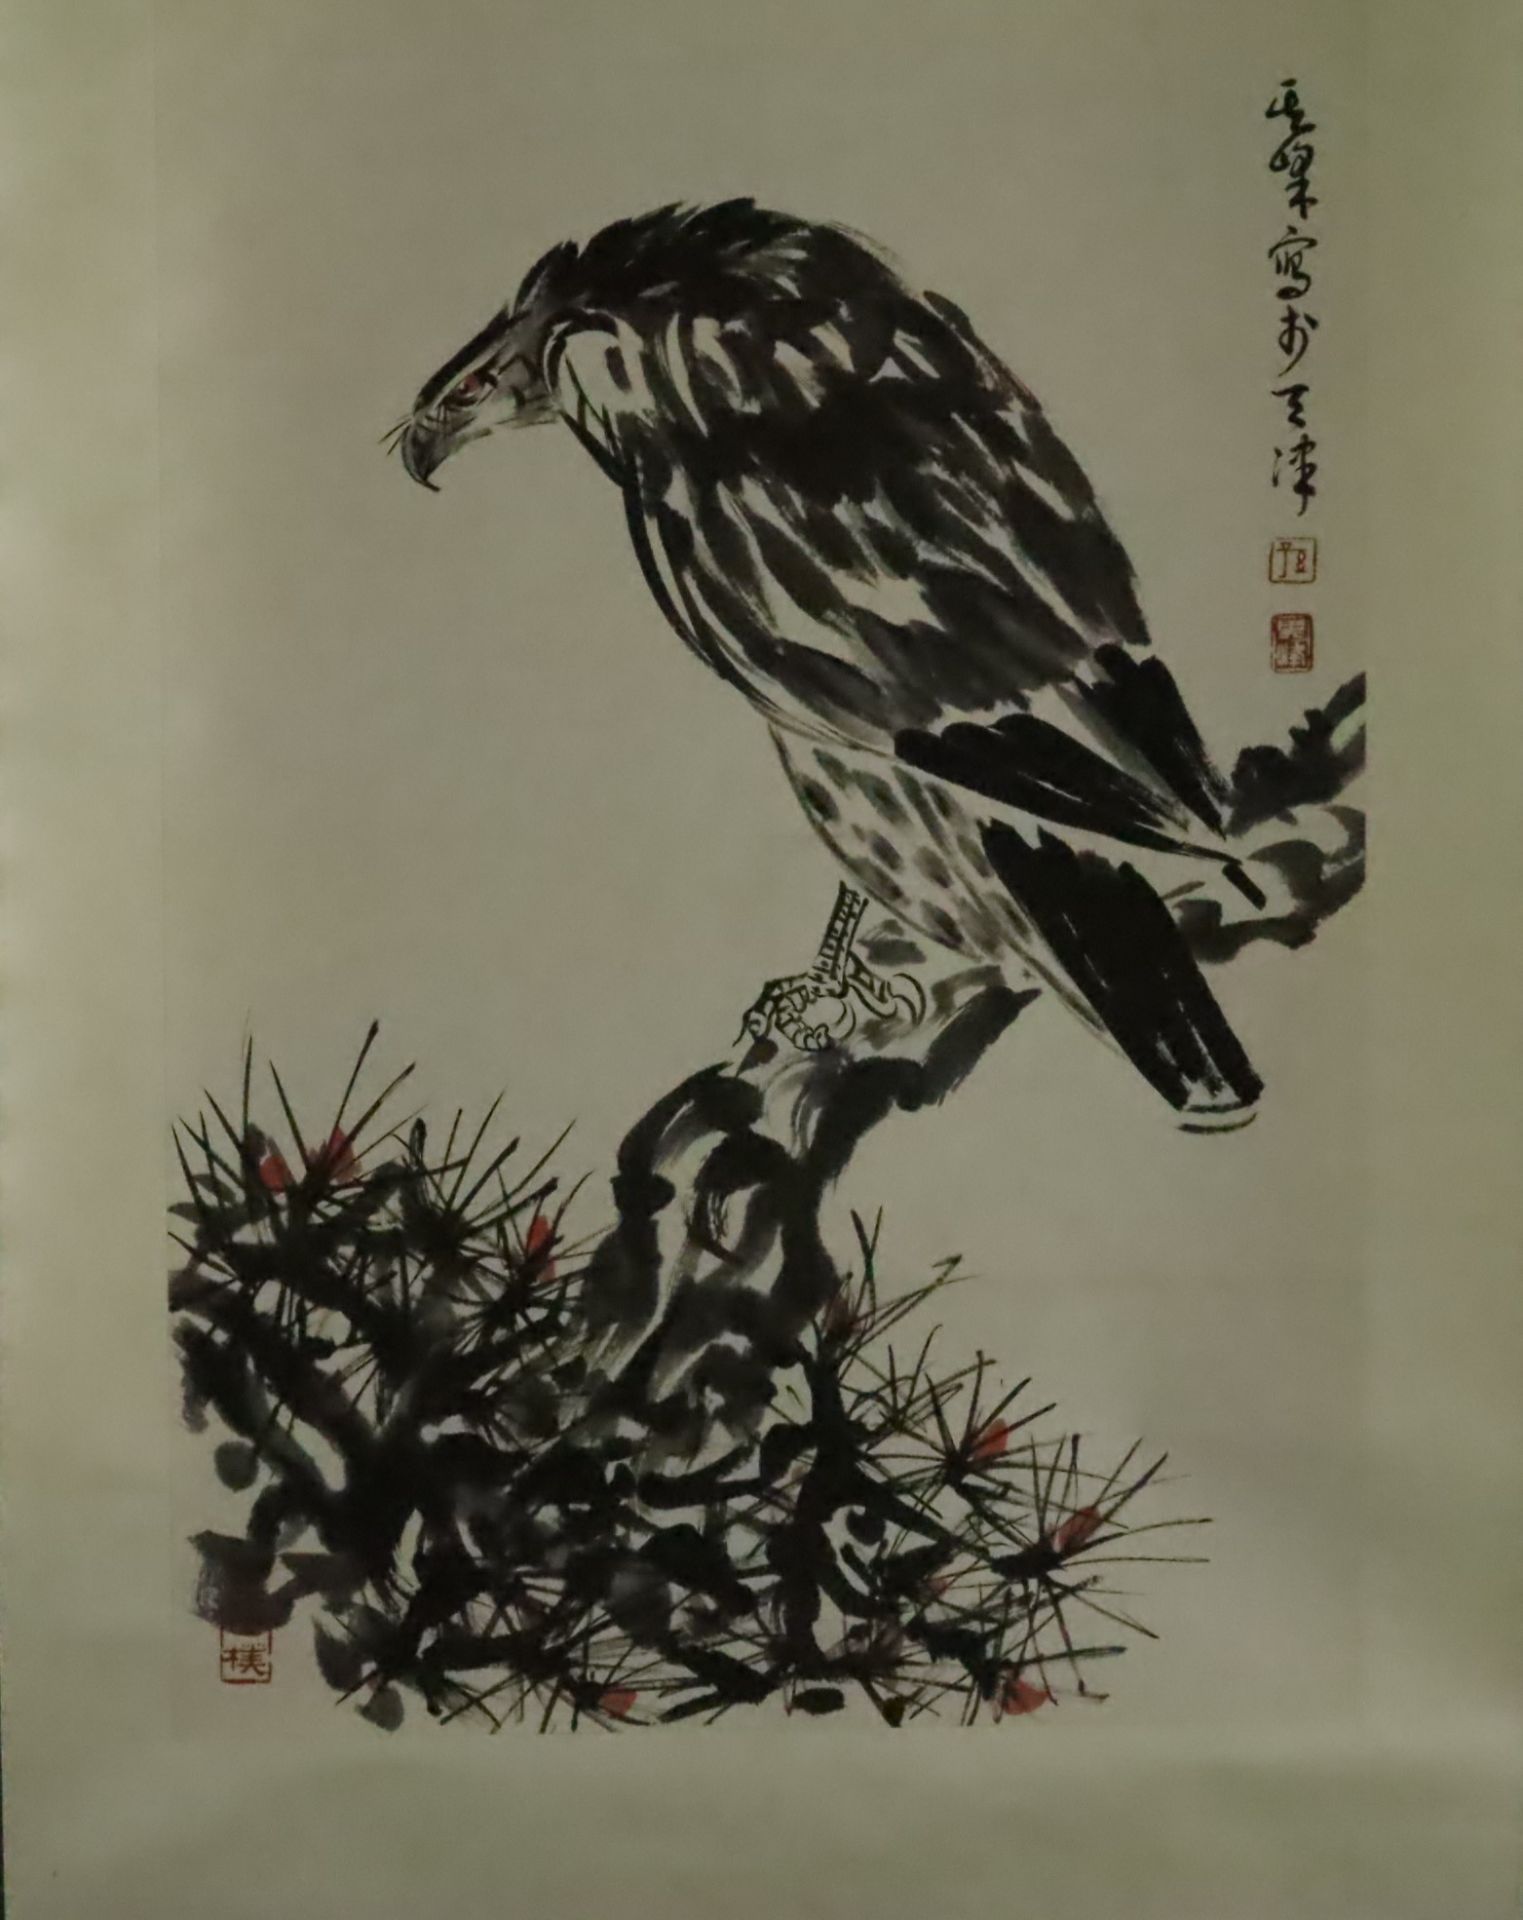 Chinesisches Rollbild - Adler, nach Sun Qifeng, Tusche und Farben auf Papier, in chinesischer Kalli